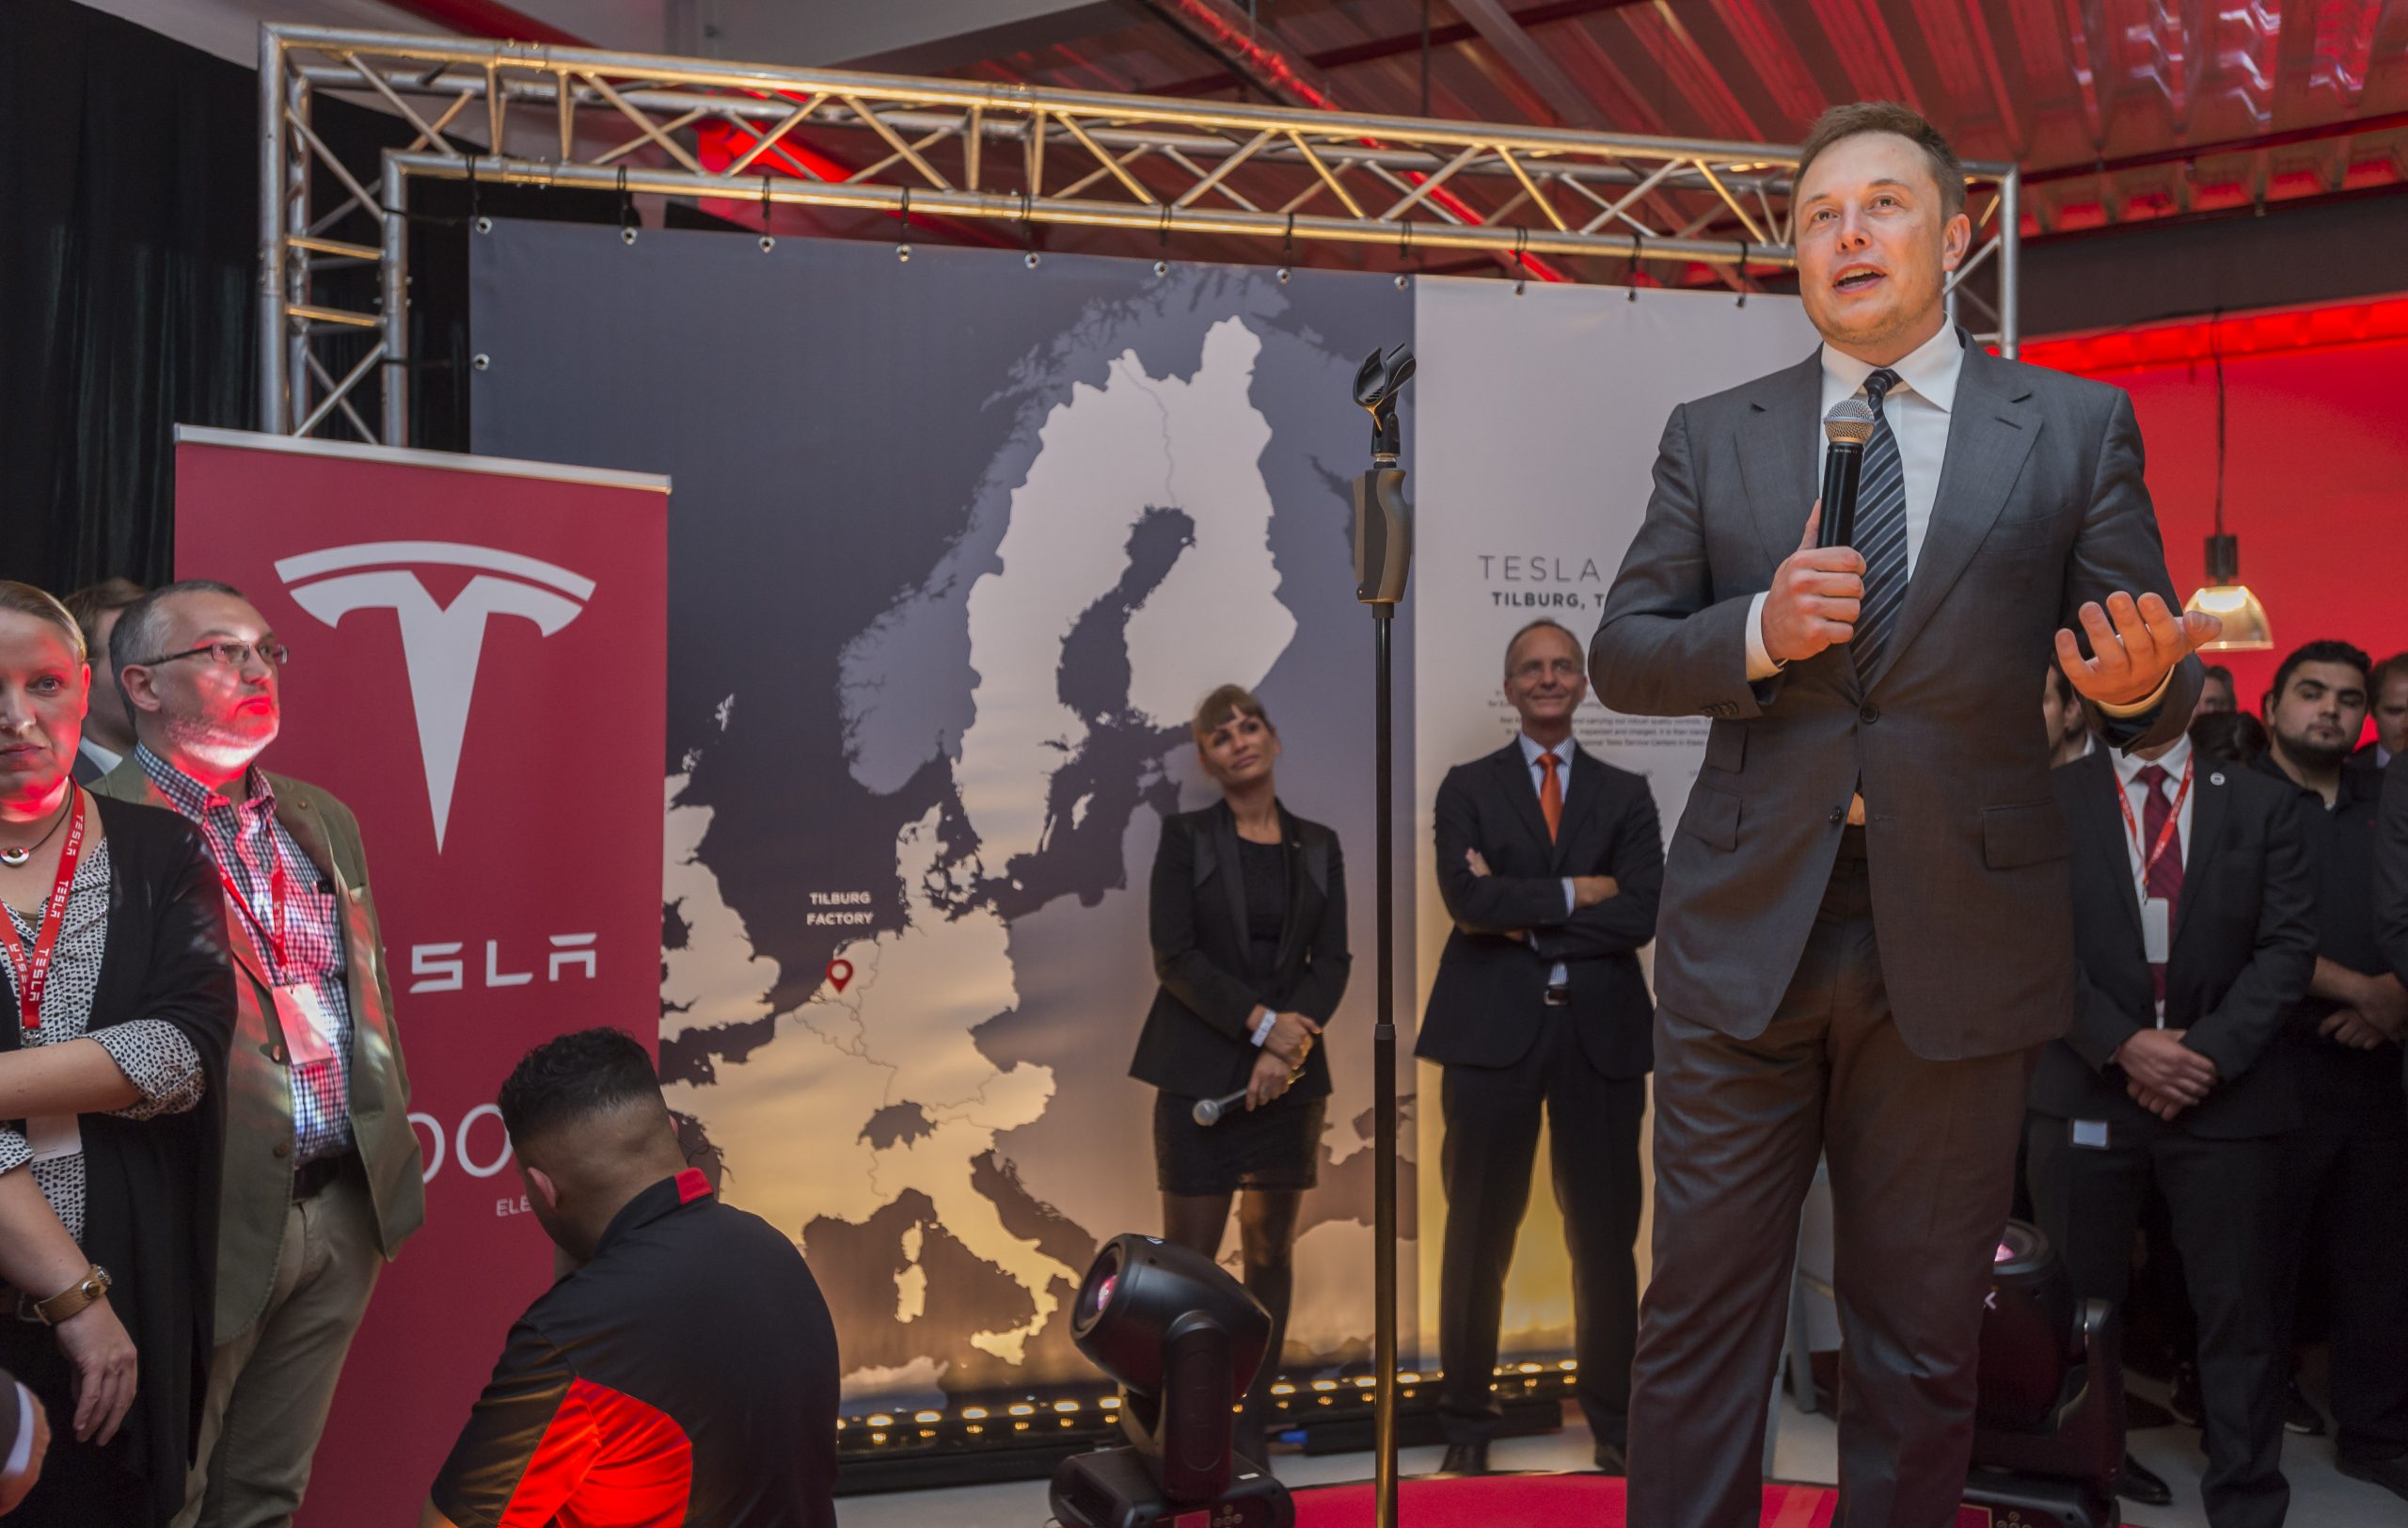 Tesla-topman Elon Musk tijdens de opening van de fabriek in Tilburg in 2015. Foto: ANP/Lex van Lieshout